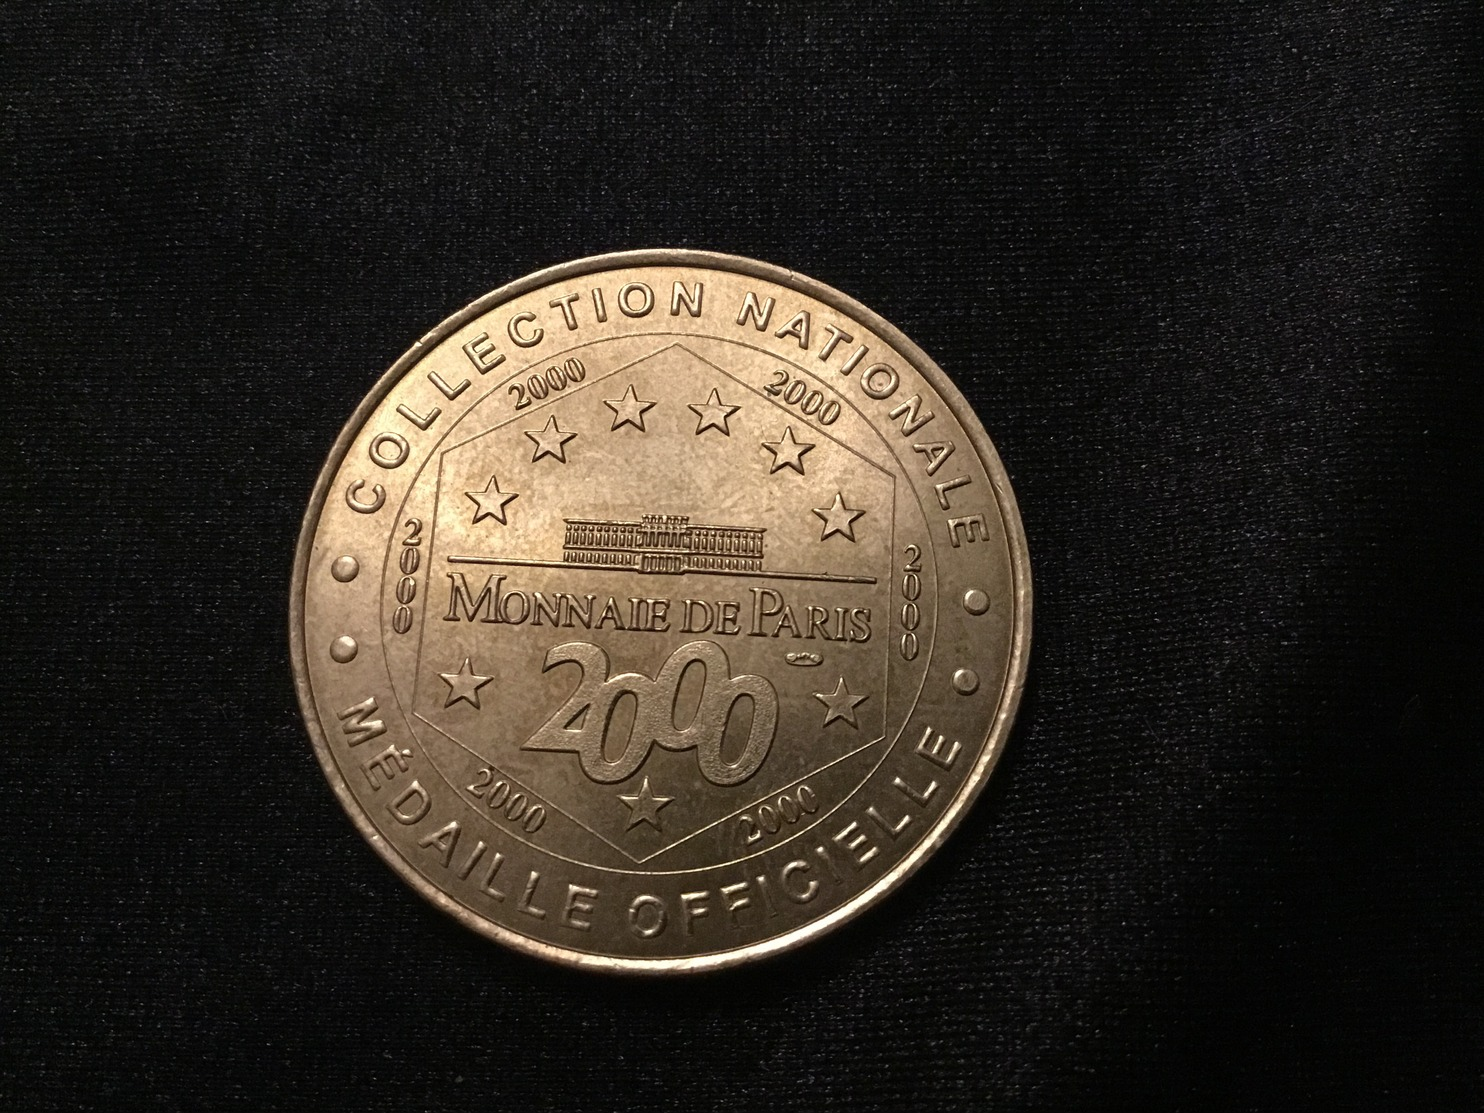 #Monnaie De Paris Musée Océanographique Monaco 2000 - 2000